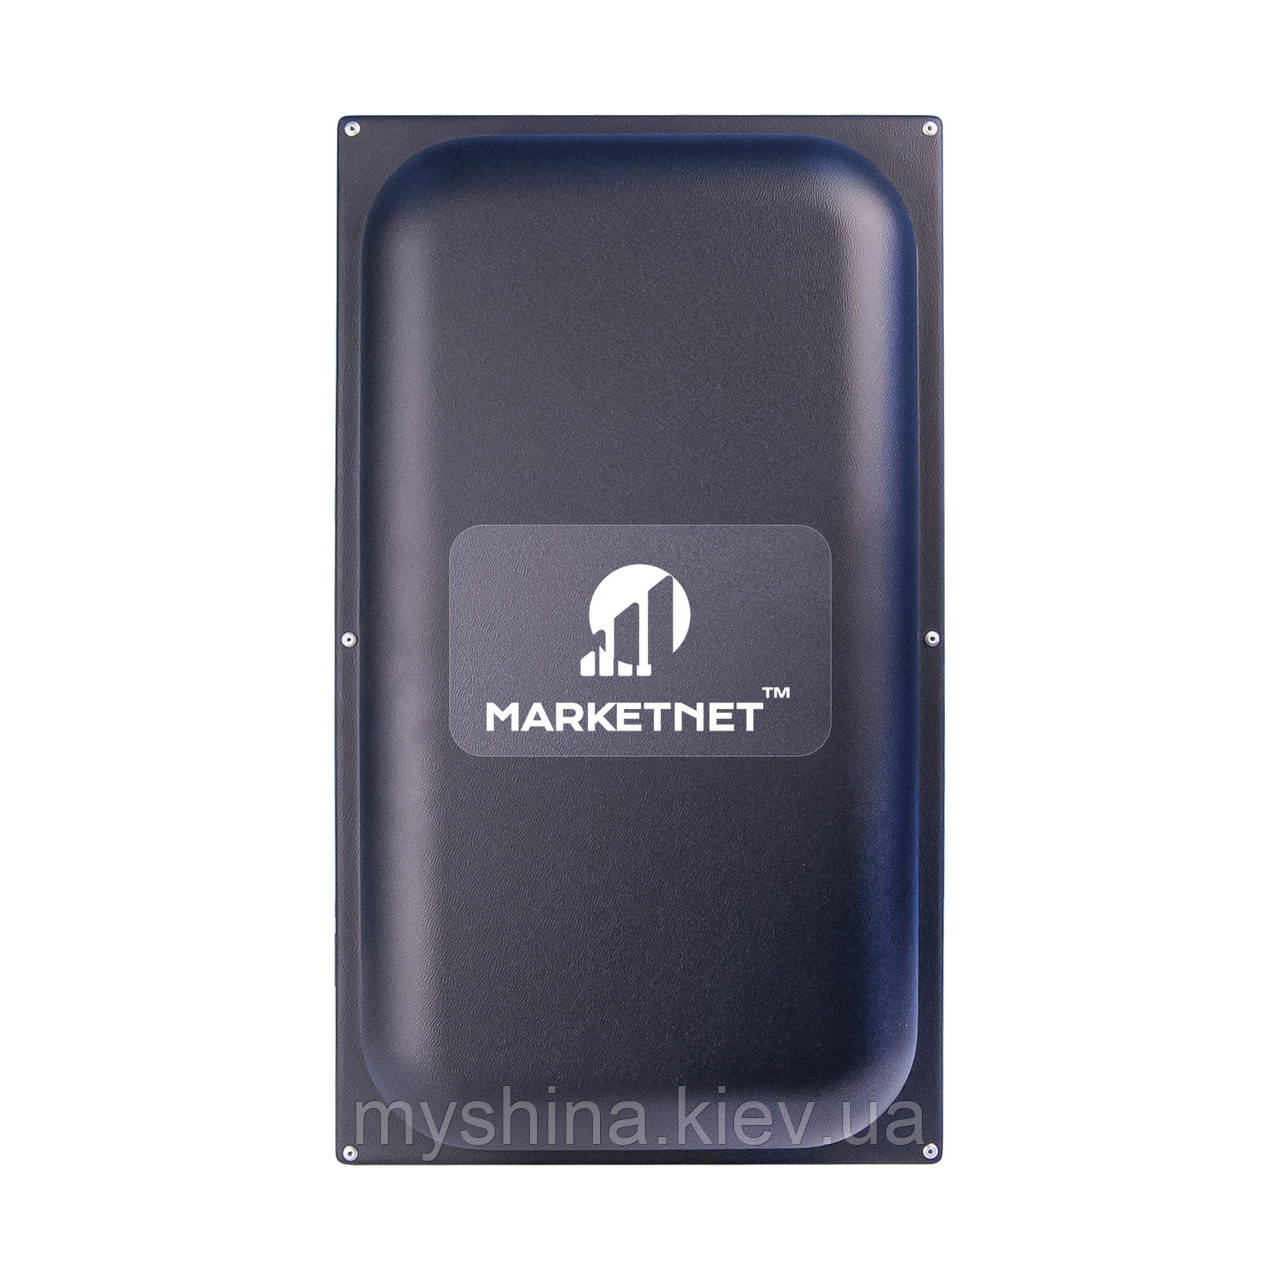 Панельна 4G антена MARKETNET Maxi MIMO 22 dBi 824-960 МГц/1700-2700 МГц (Київстар, Vodafone, Lifecell)